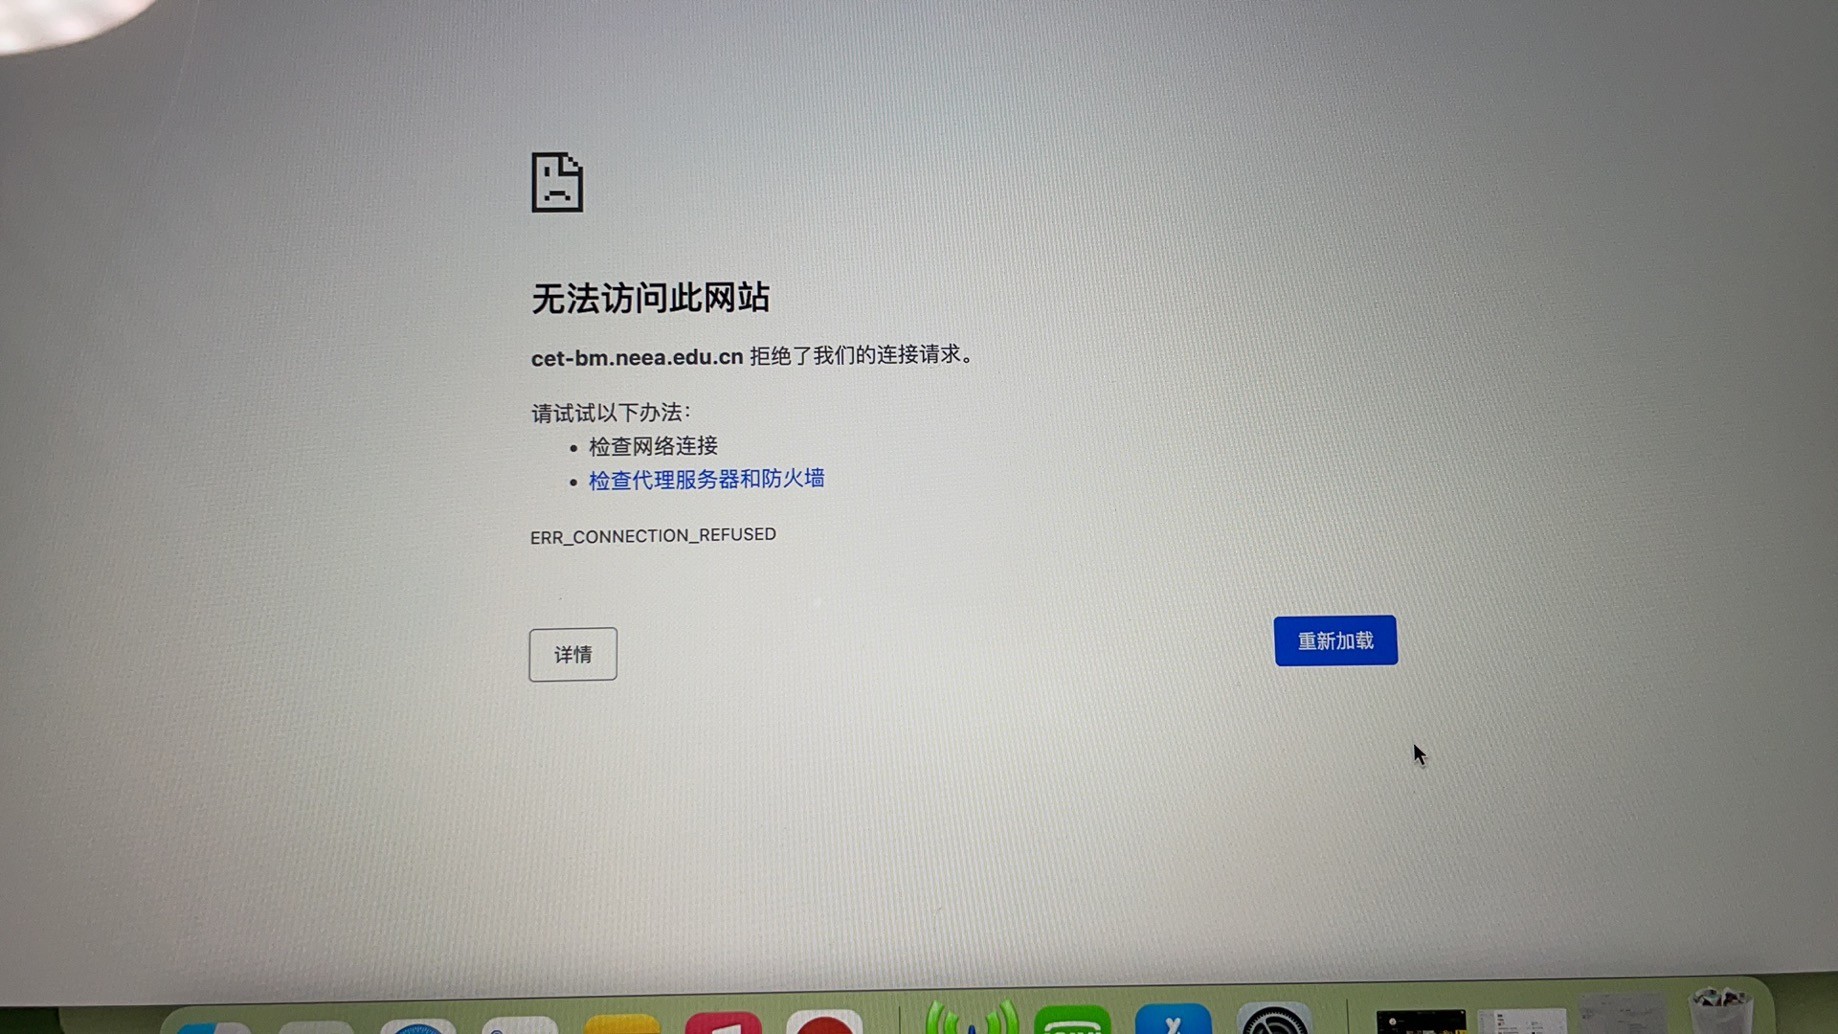 问题问safariliu浏览器打不开该网页因为无法连接服务器